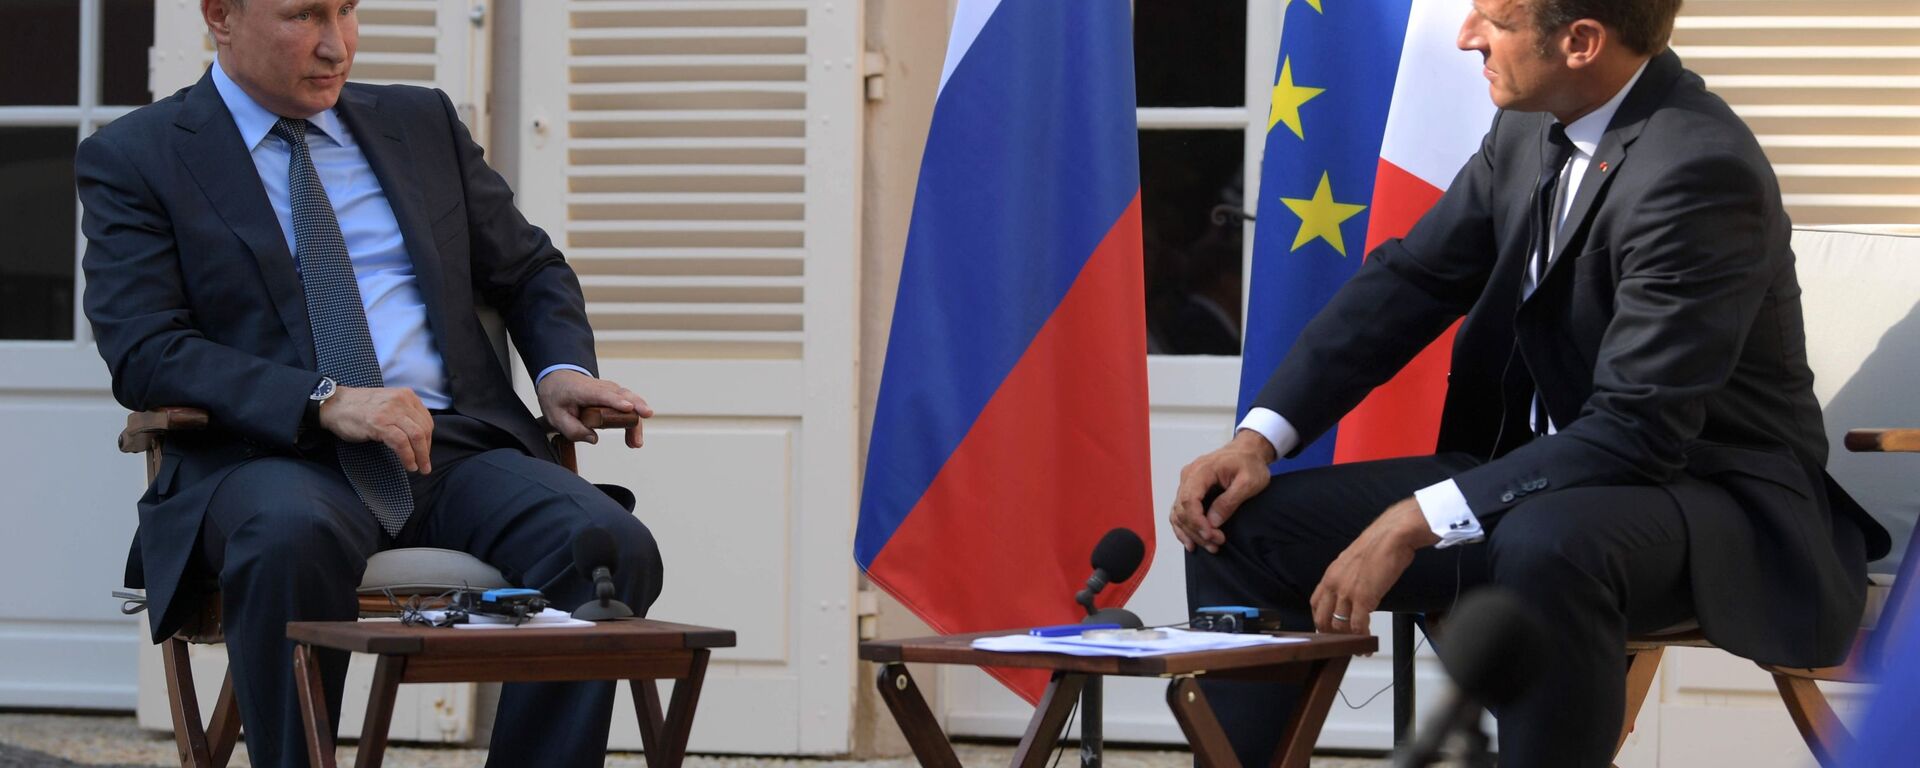 الرئيس الروسي فلاديمير بوتين والرئيس الفرنسي إيمانويل ماكرون خلال اجتماع عقد في مقر إقامة الرئيس الفرنسي فورت بريغانكون، 27 أغسطس/ آب 2019 - سبوتنيك عربي, 1920, 15.03.2022